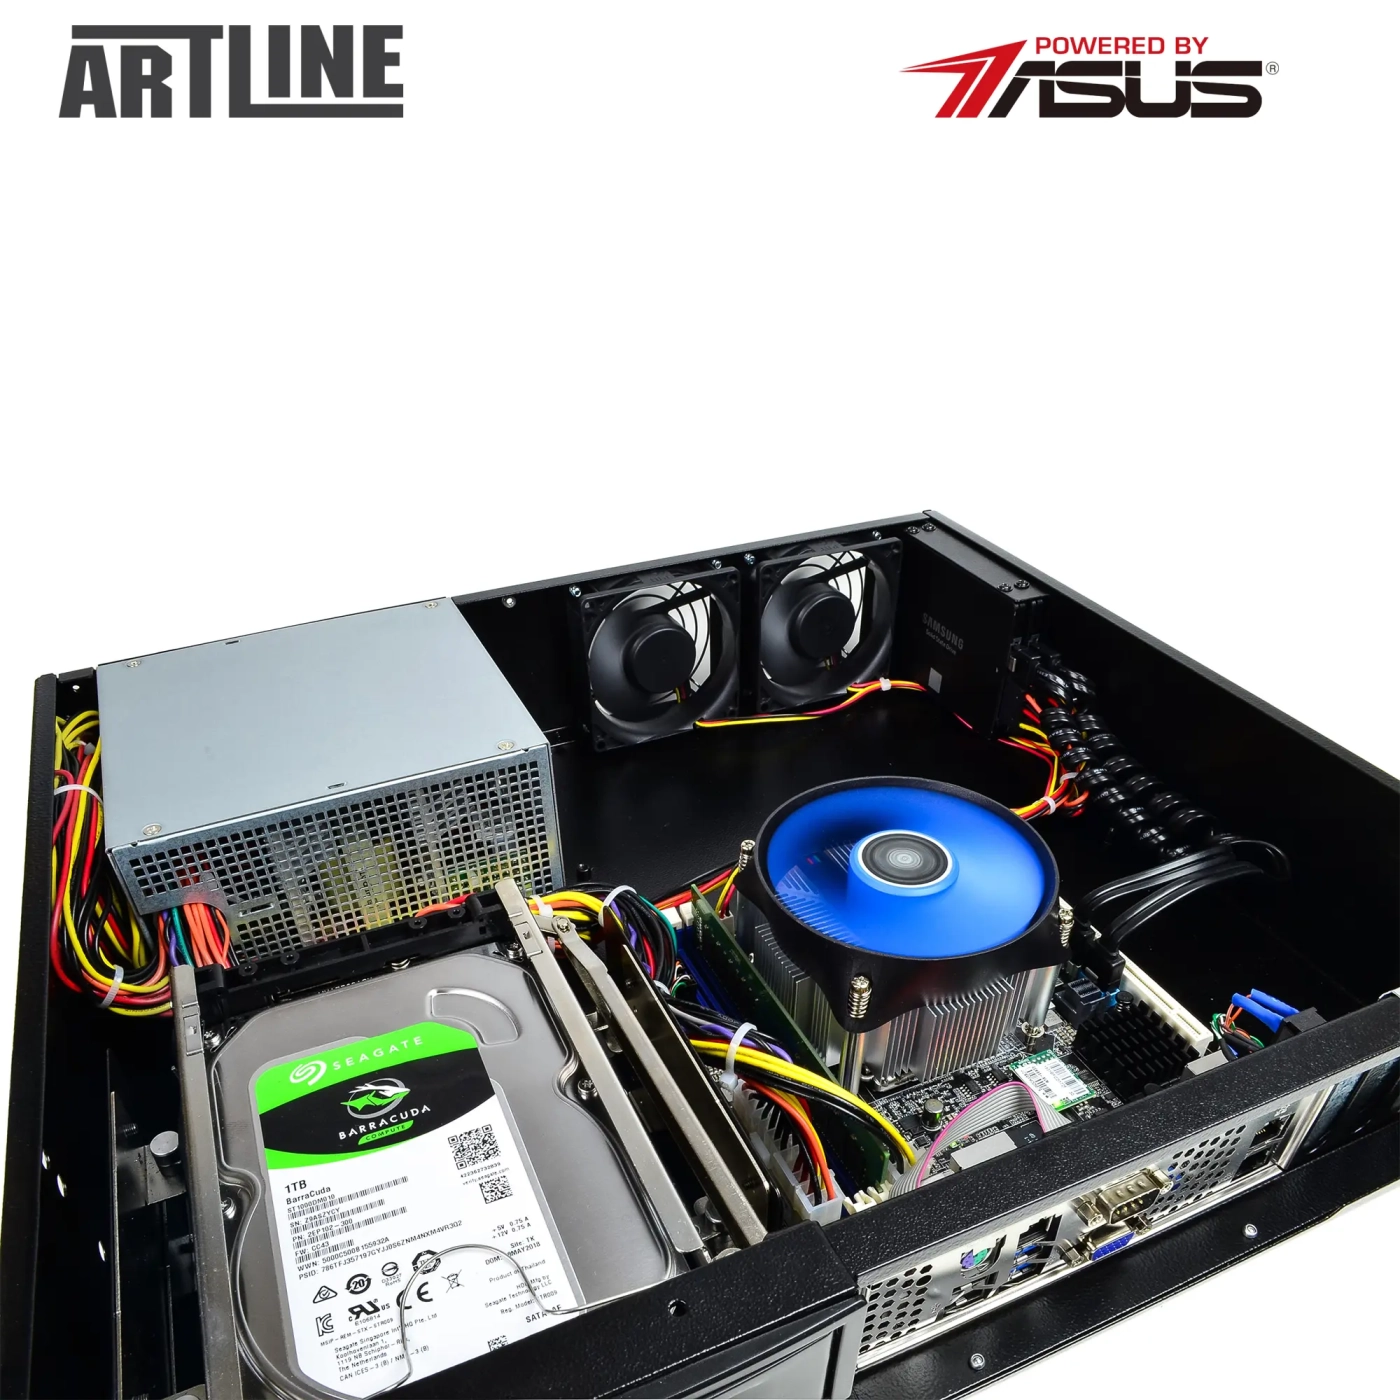 Купить Сервер ARTLINE Business R37 (R37v92) - фото 10